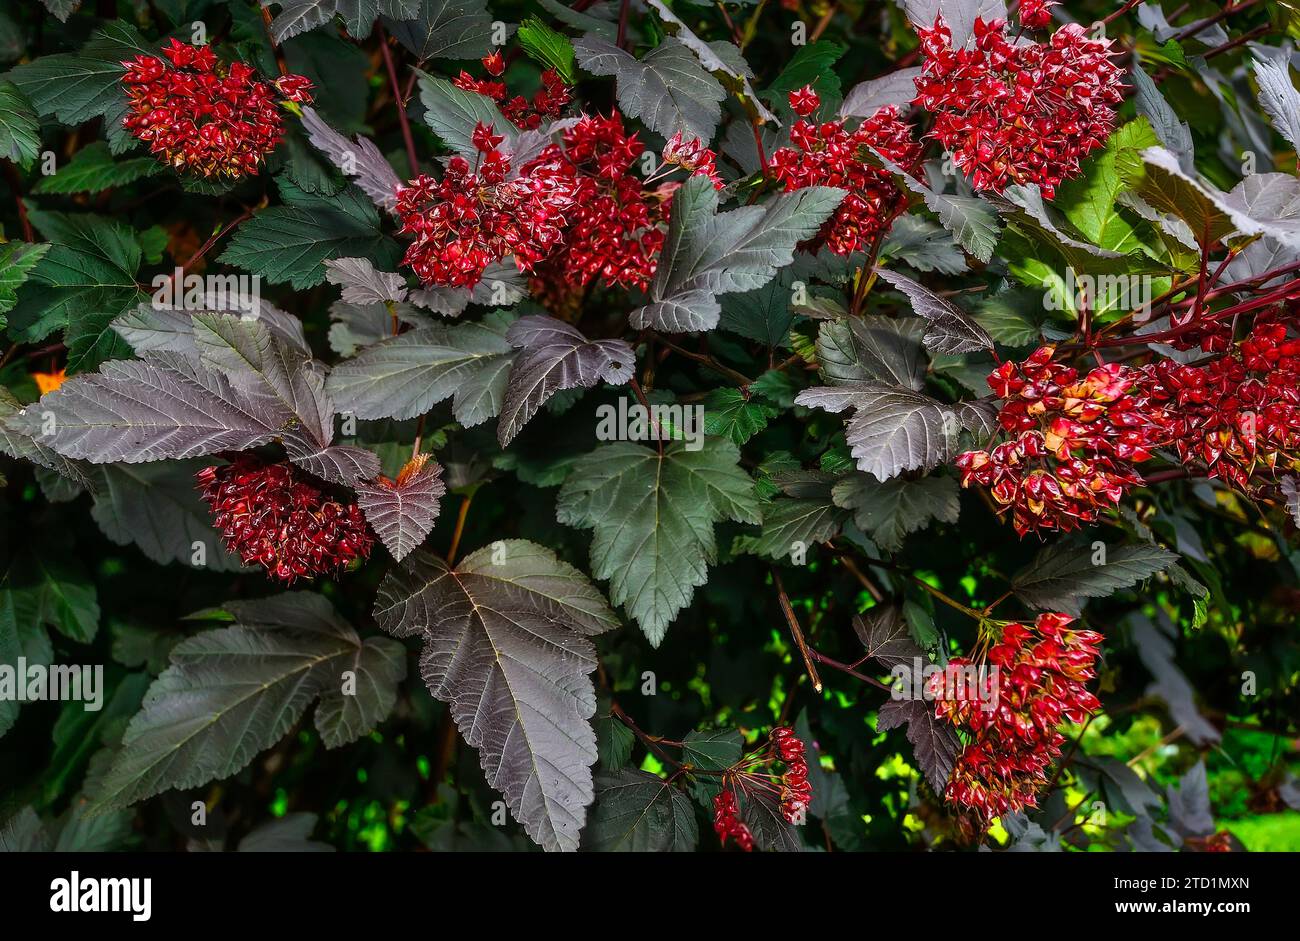 Farbenfroher Ninebark oder Physocarpus opulifolius mit violetten Blättern und roten Früchten - schöner dekorativer mehrjähriger Laubbusch im Sommergarten, Clos Stockfoto